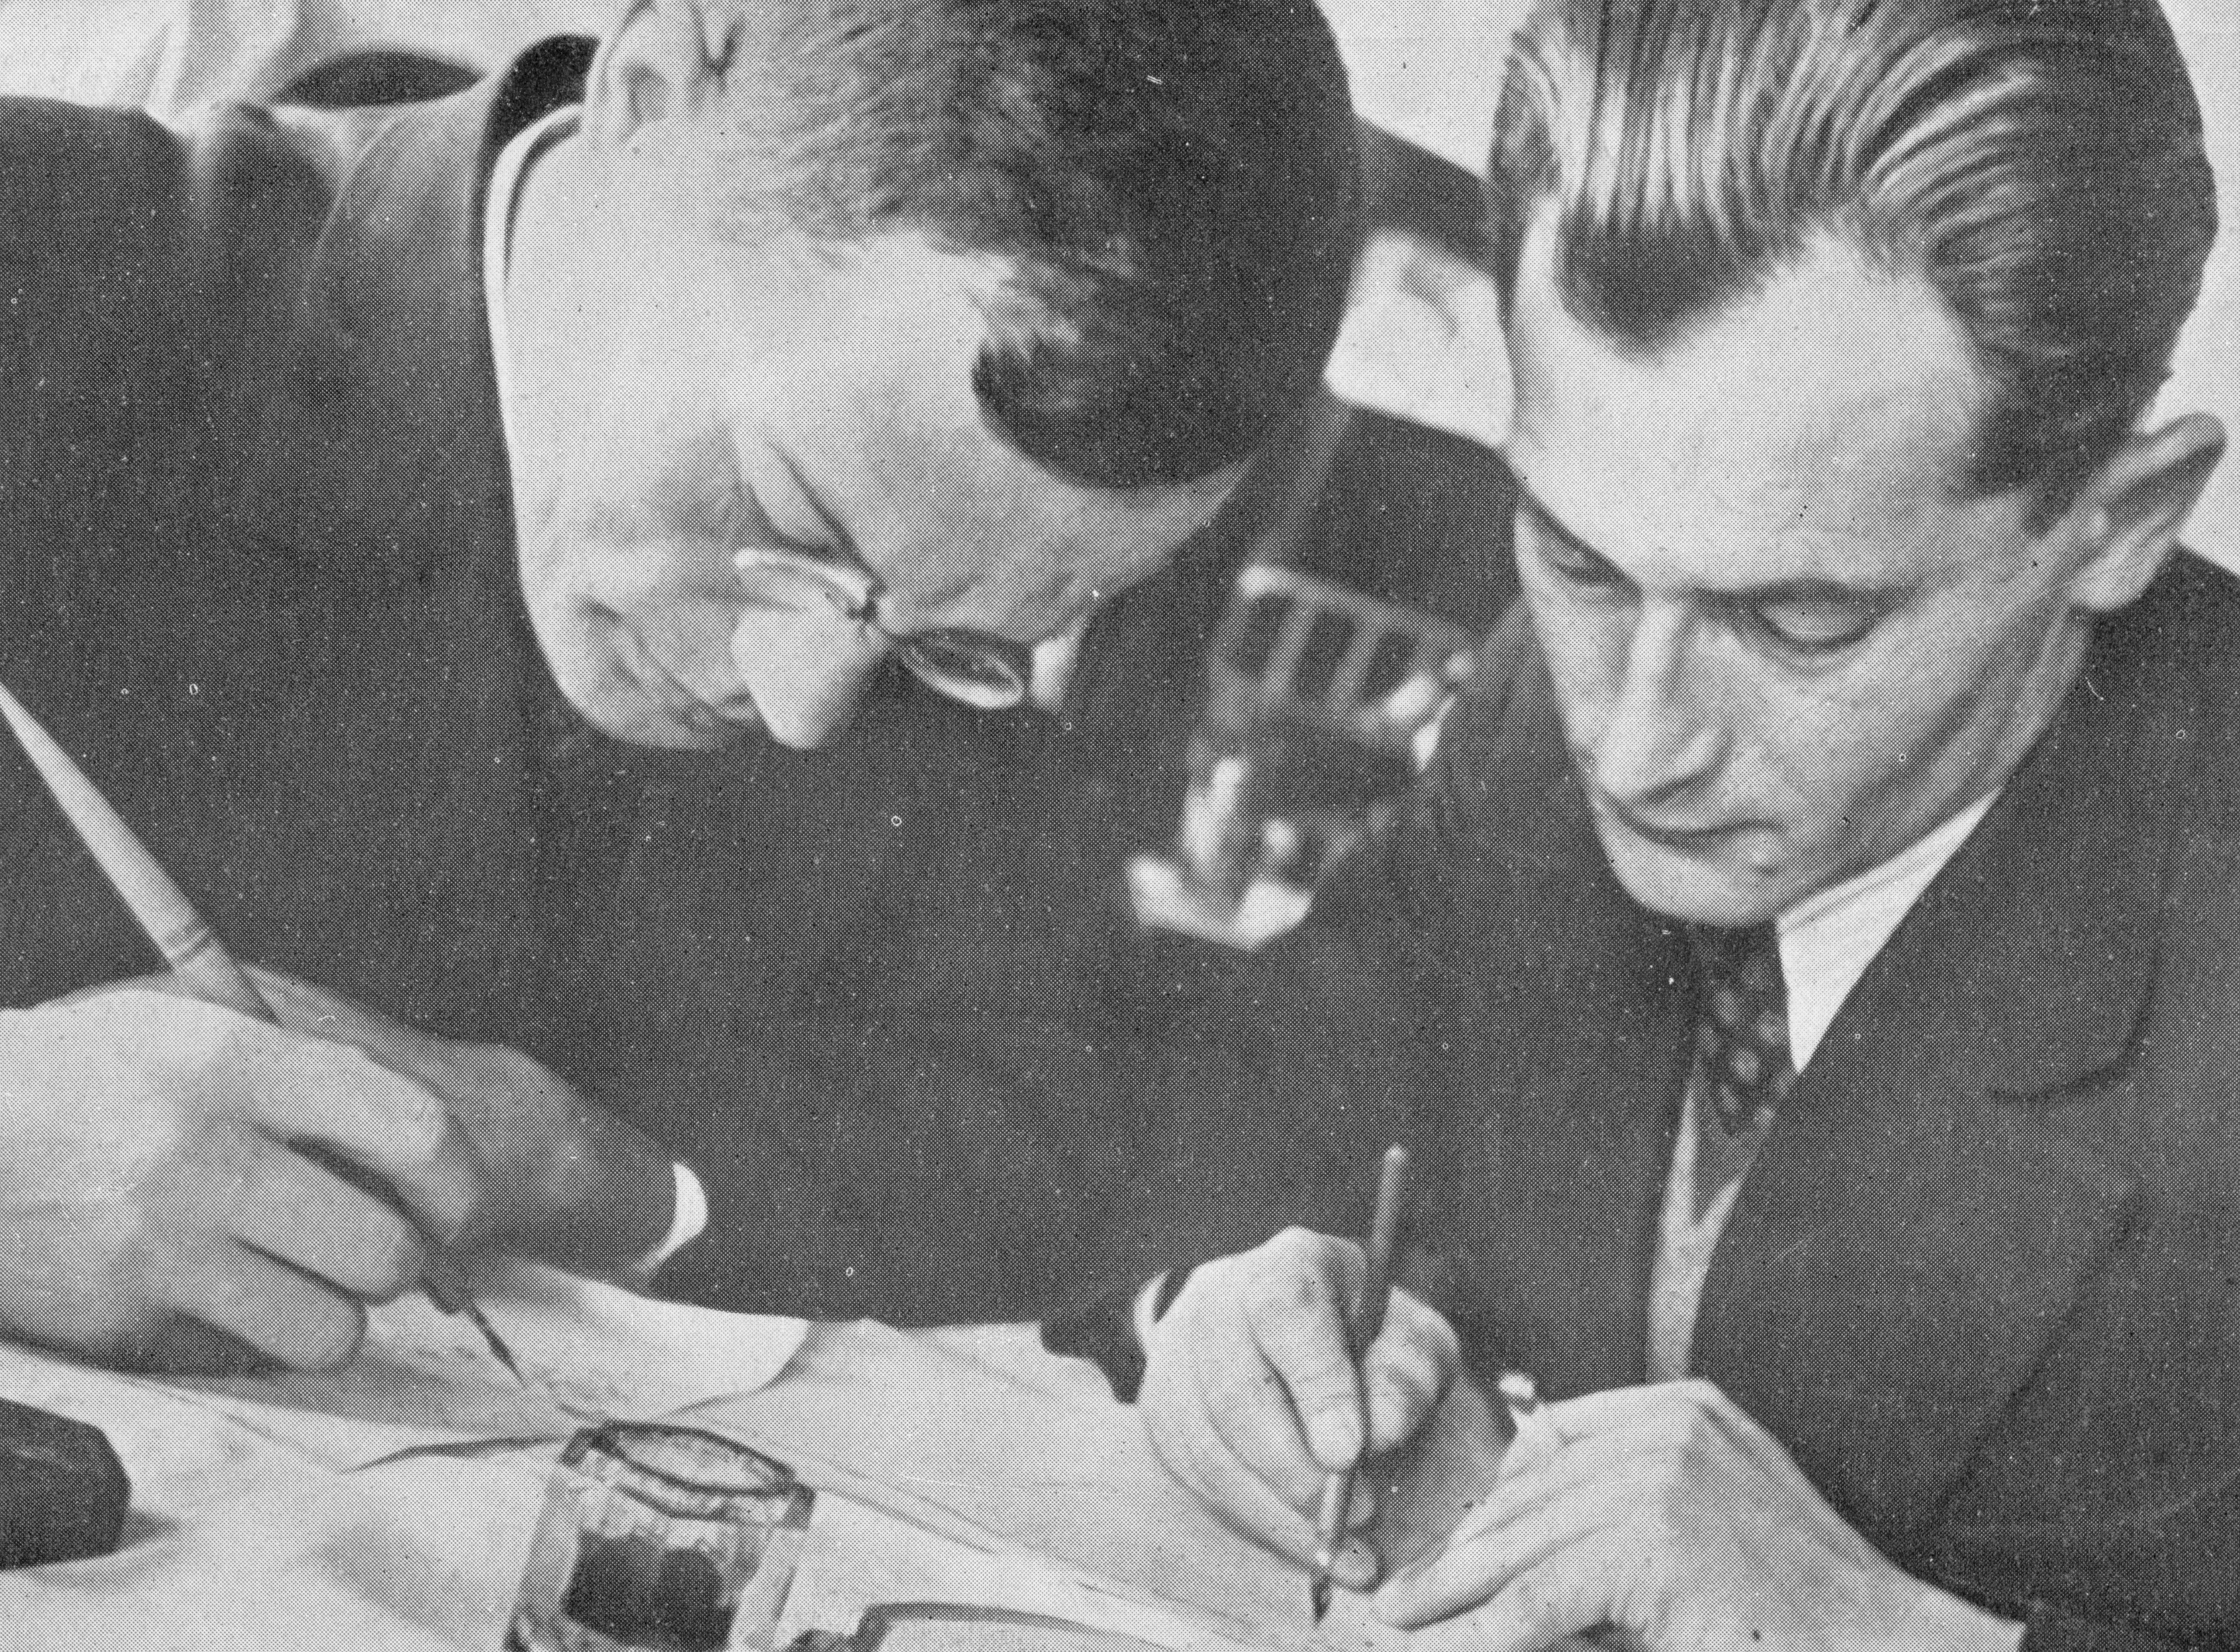 Taking on the establishment: Ilf, left, and Petrov circa 1940